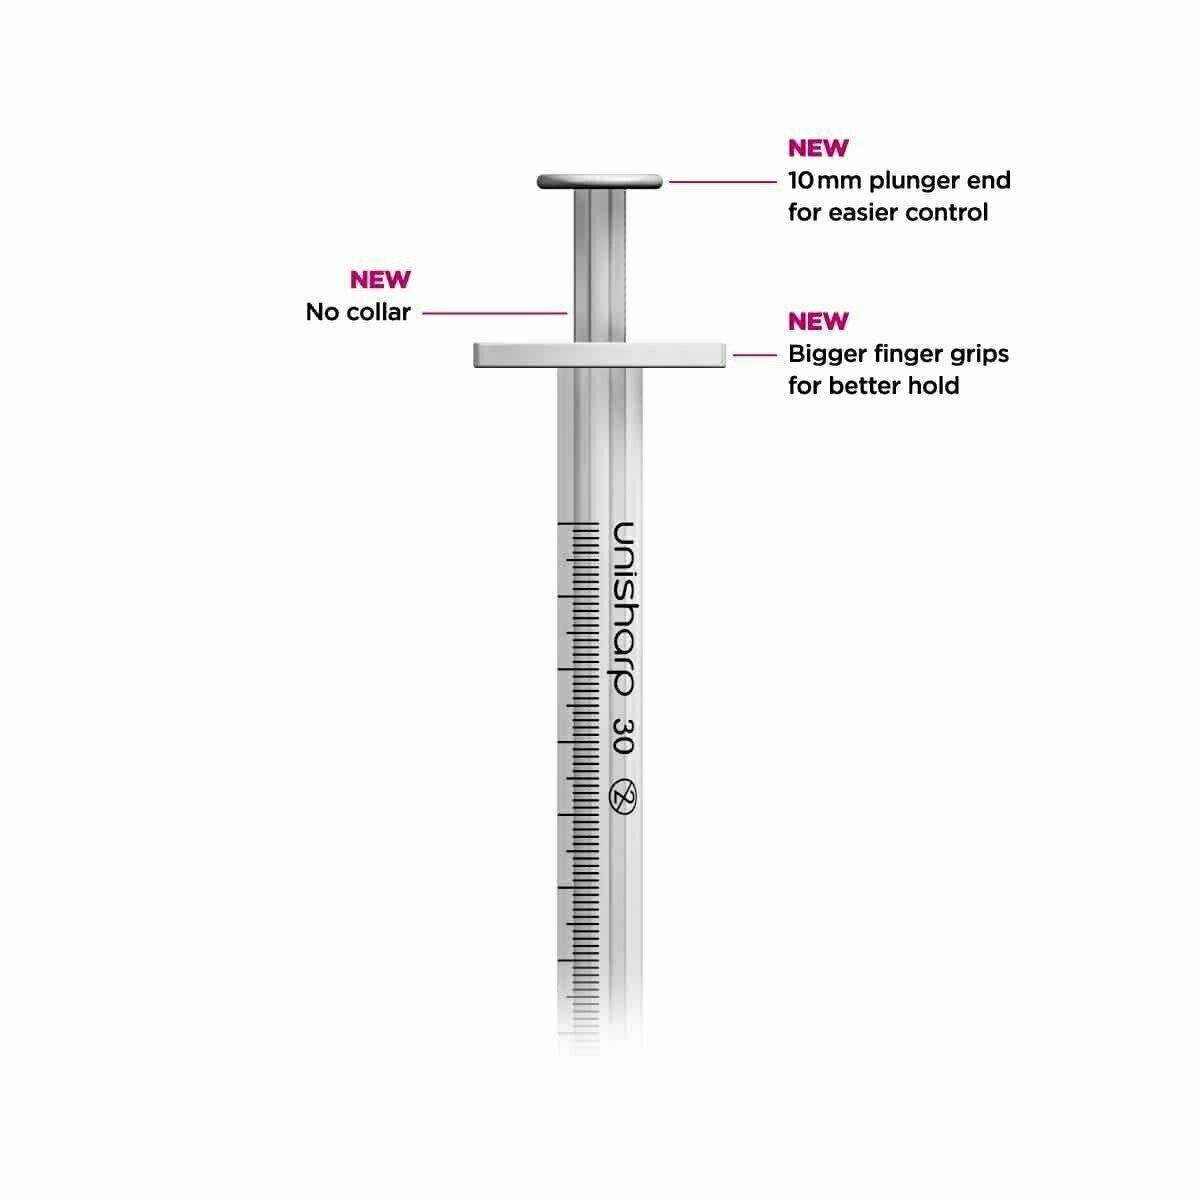 1ml 0.5 inch 27g Unisharp Syringe and Needle u100 - UKMEDI